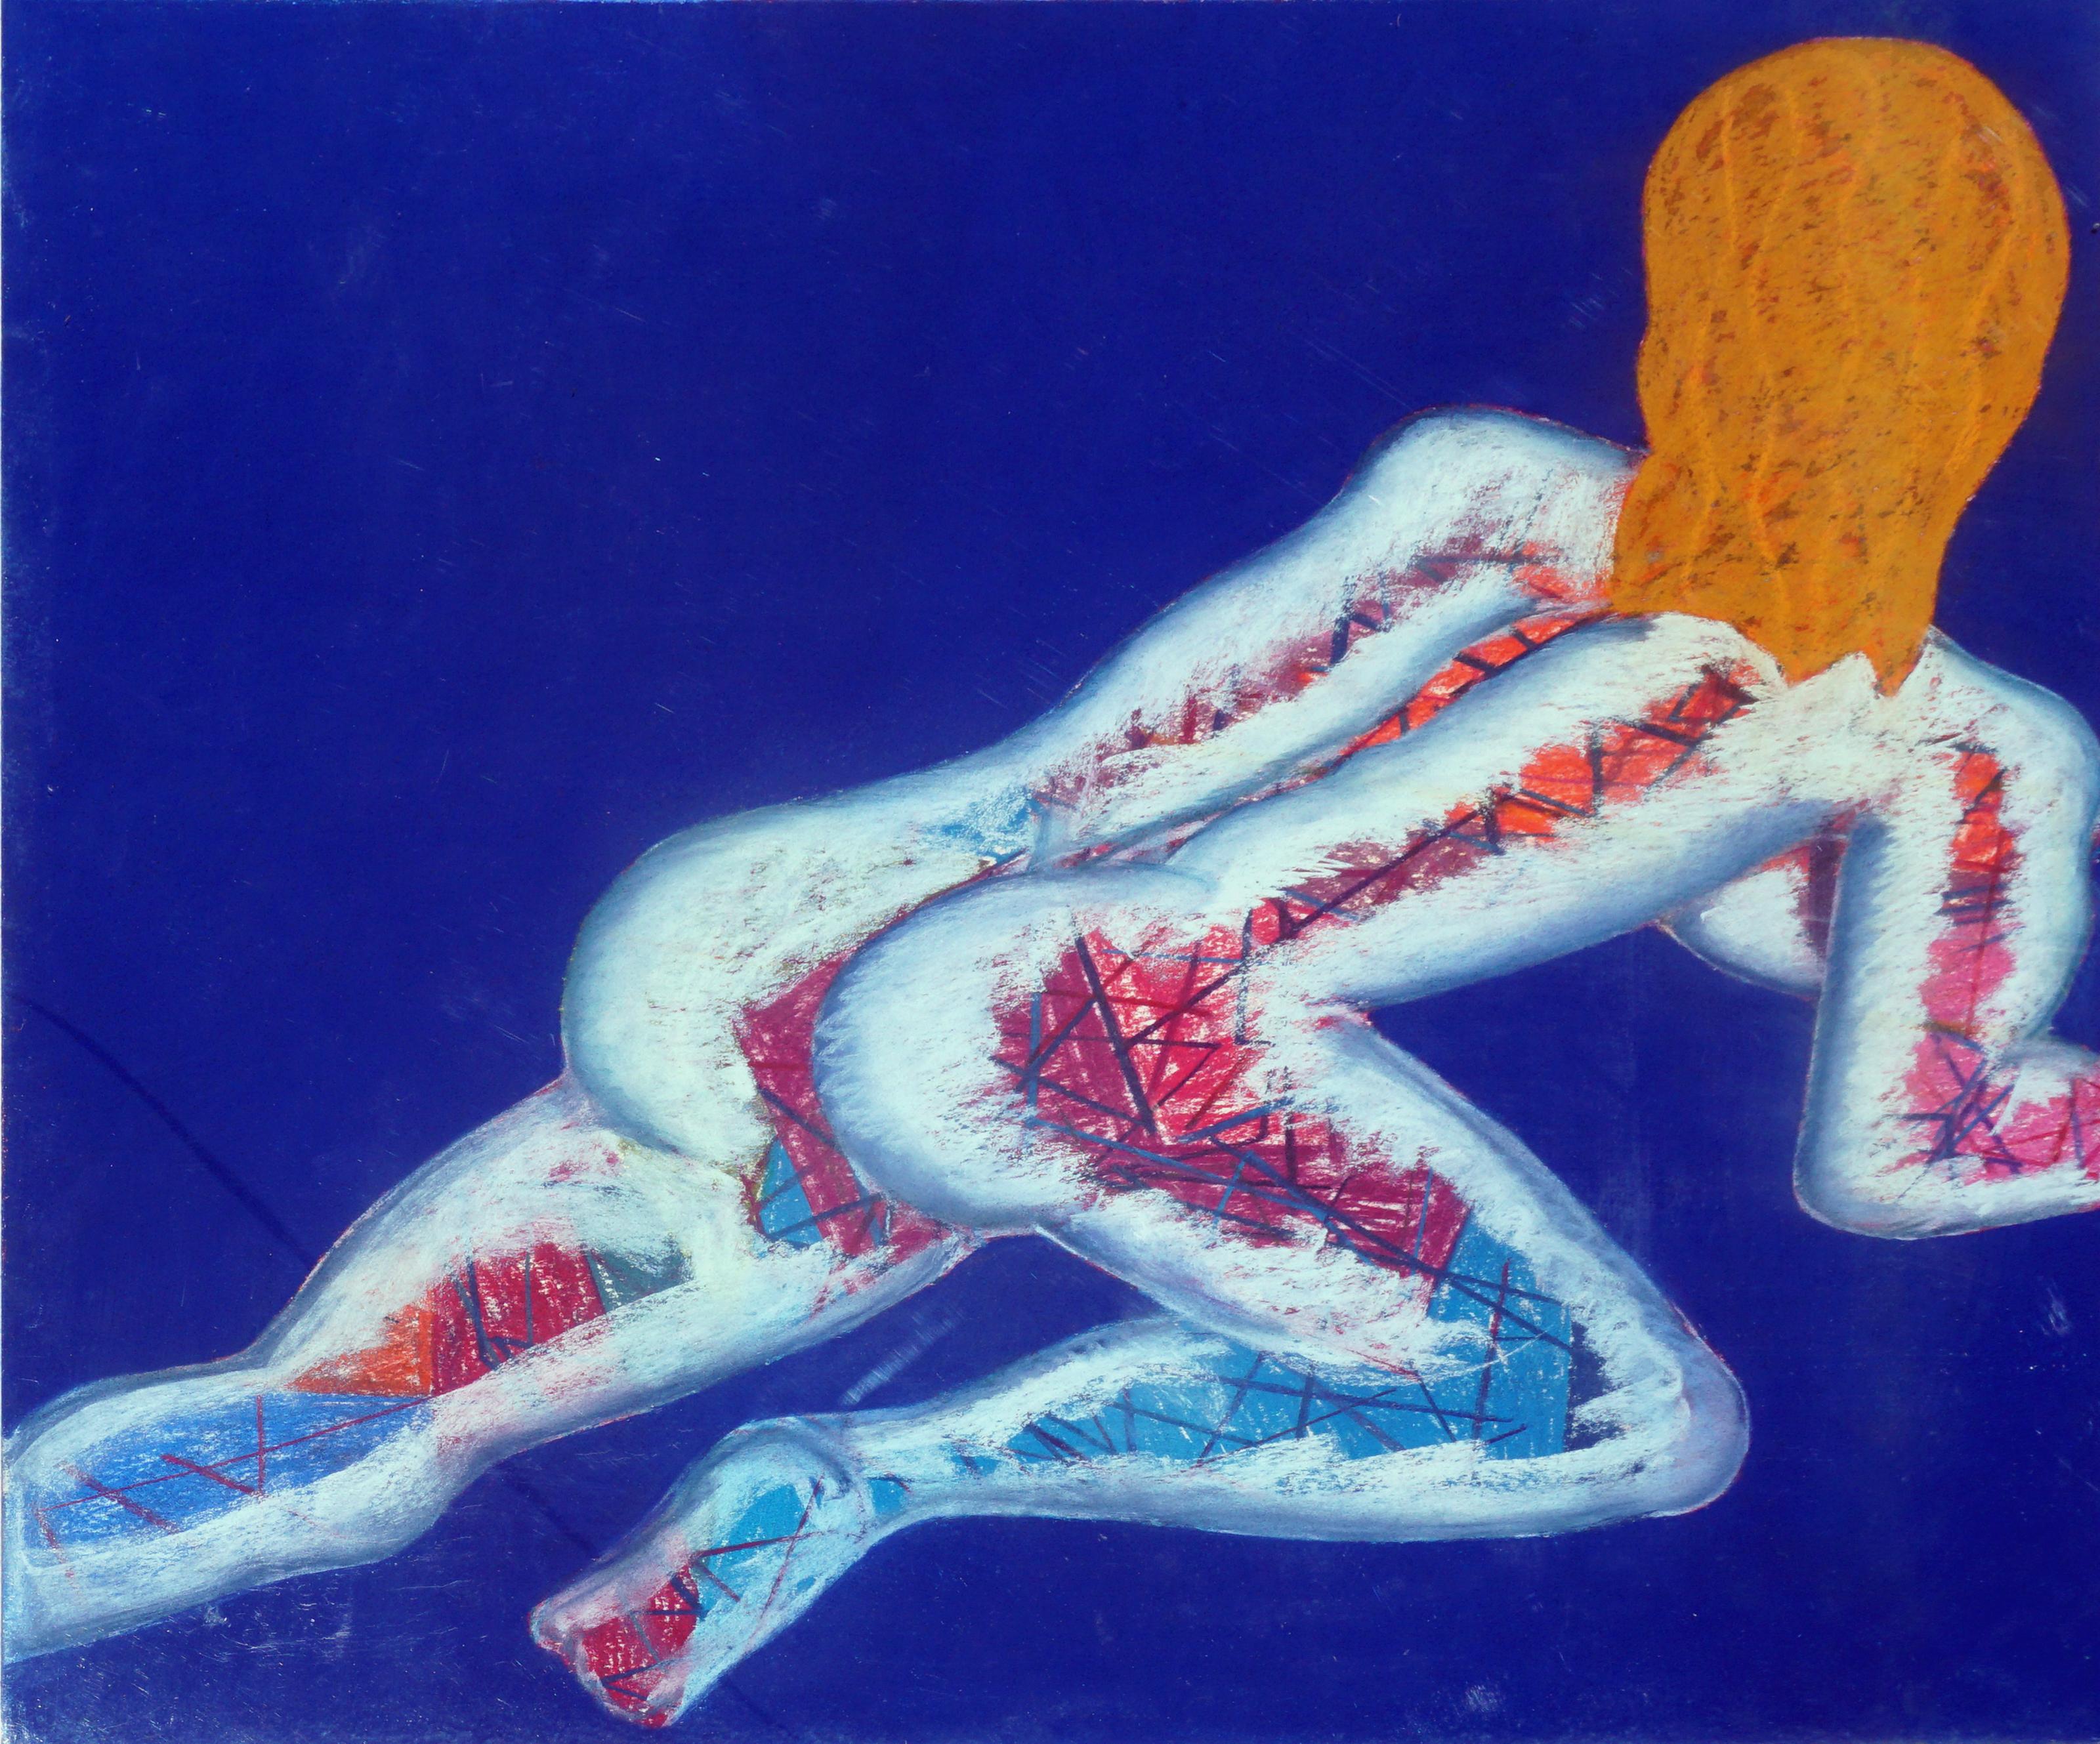 Modernistische Avantgarde, figurative abstrakte, großformatige Pastellfarben in Primärfarben, Pastell  (Abstrakter Expressionismus), Art, von Henry Elinson